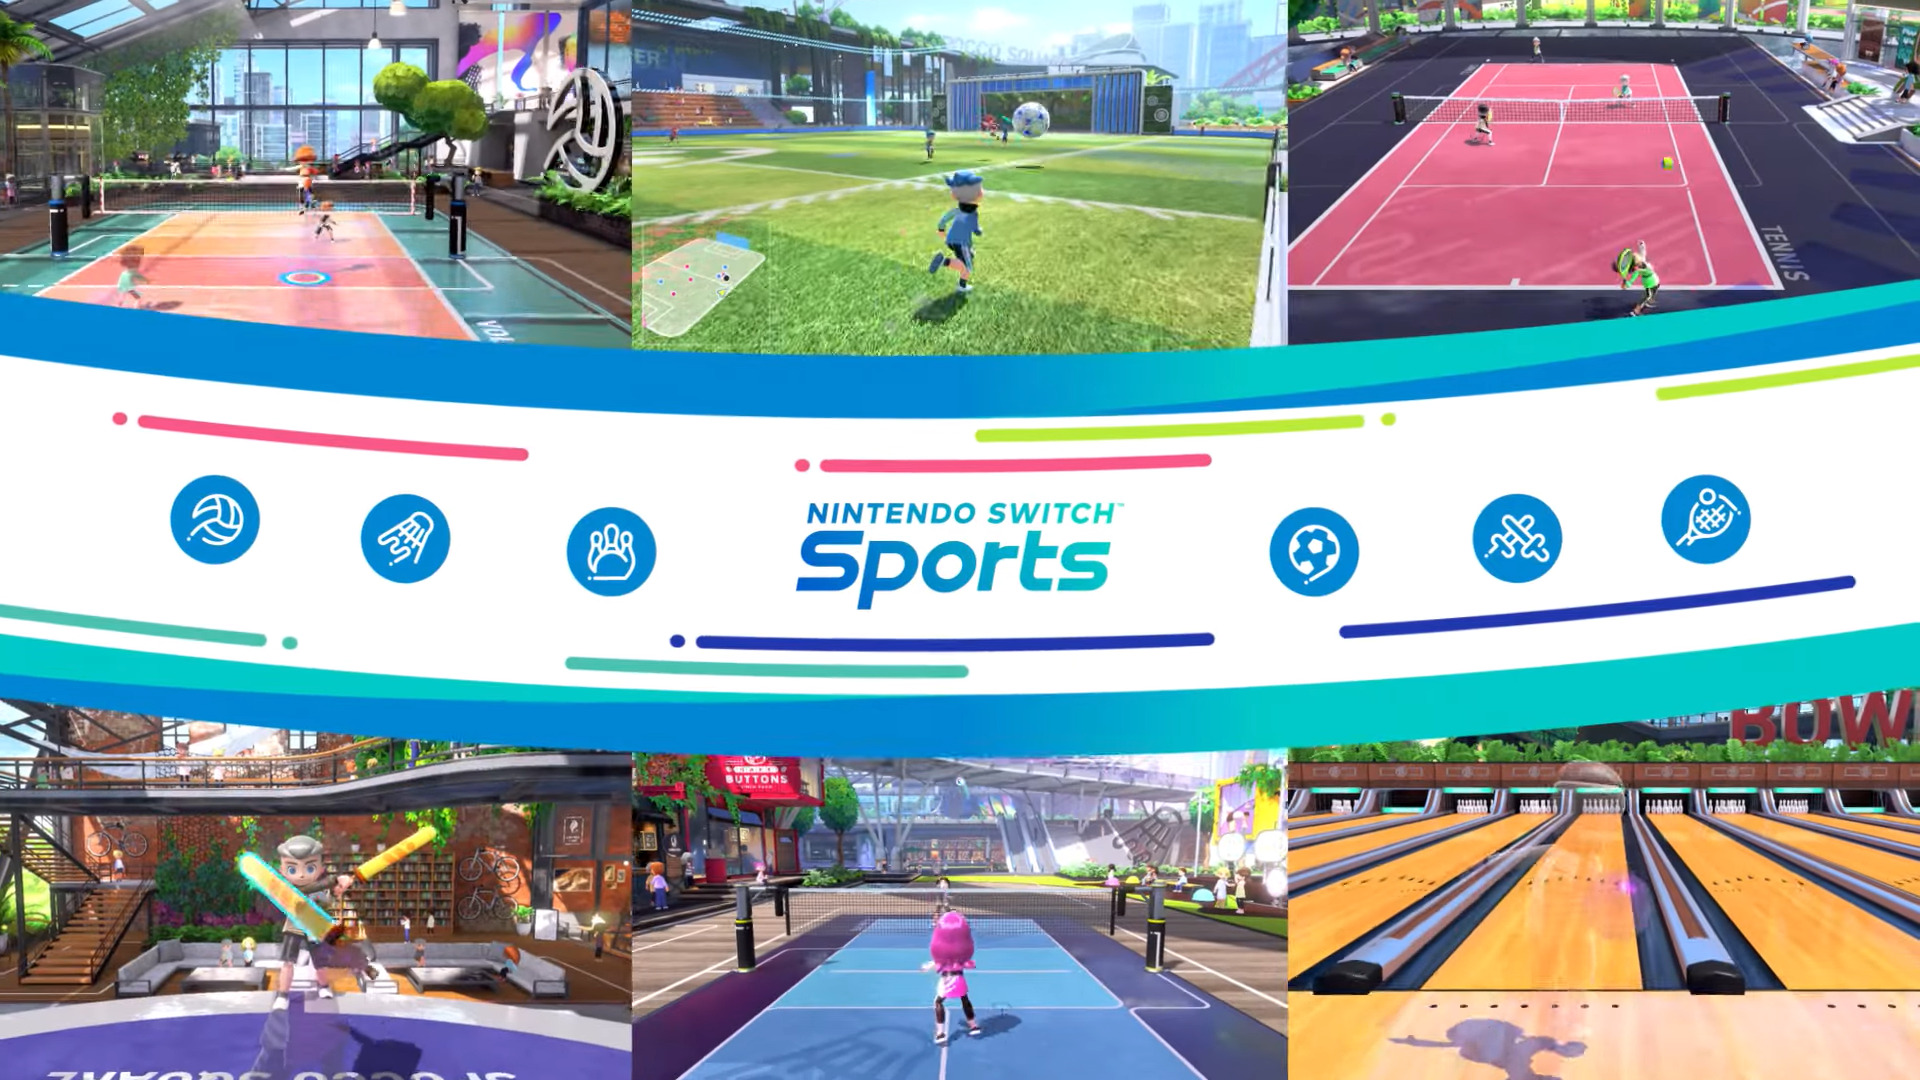 #Nintendo Switch Sports ist jetzt erhältlich und animiert zur Bewegung